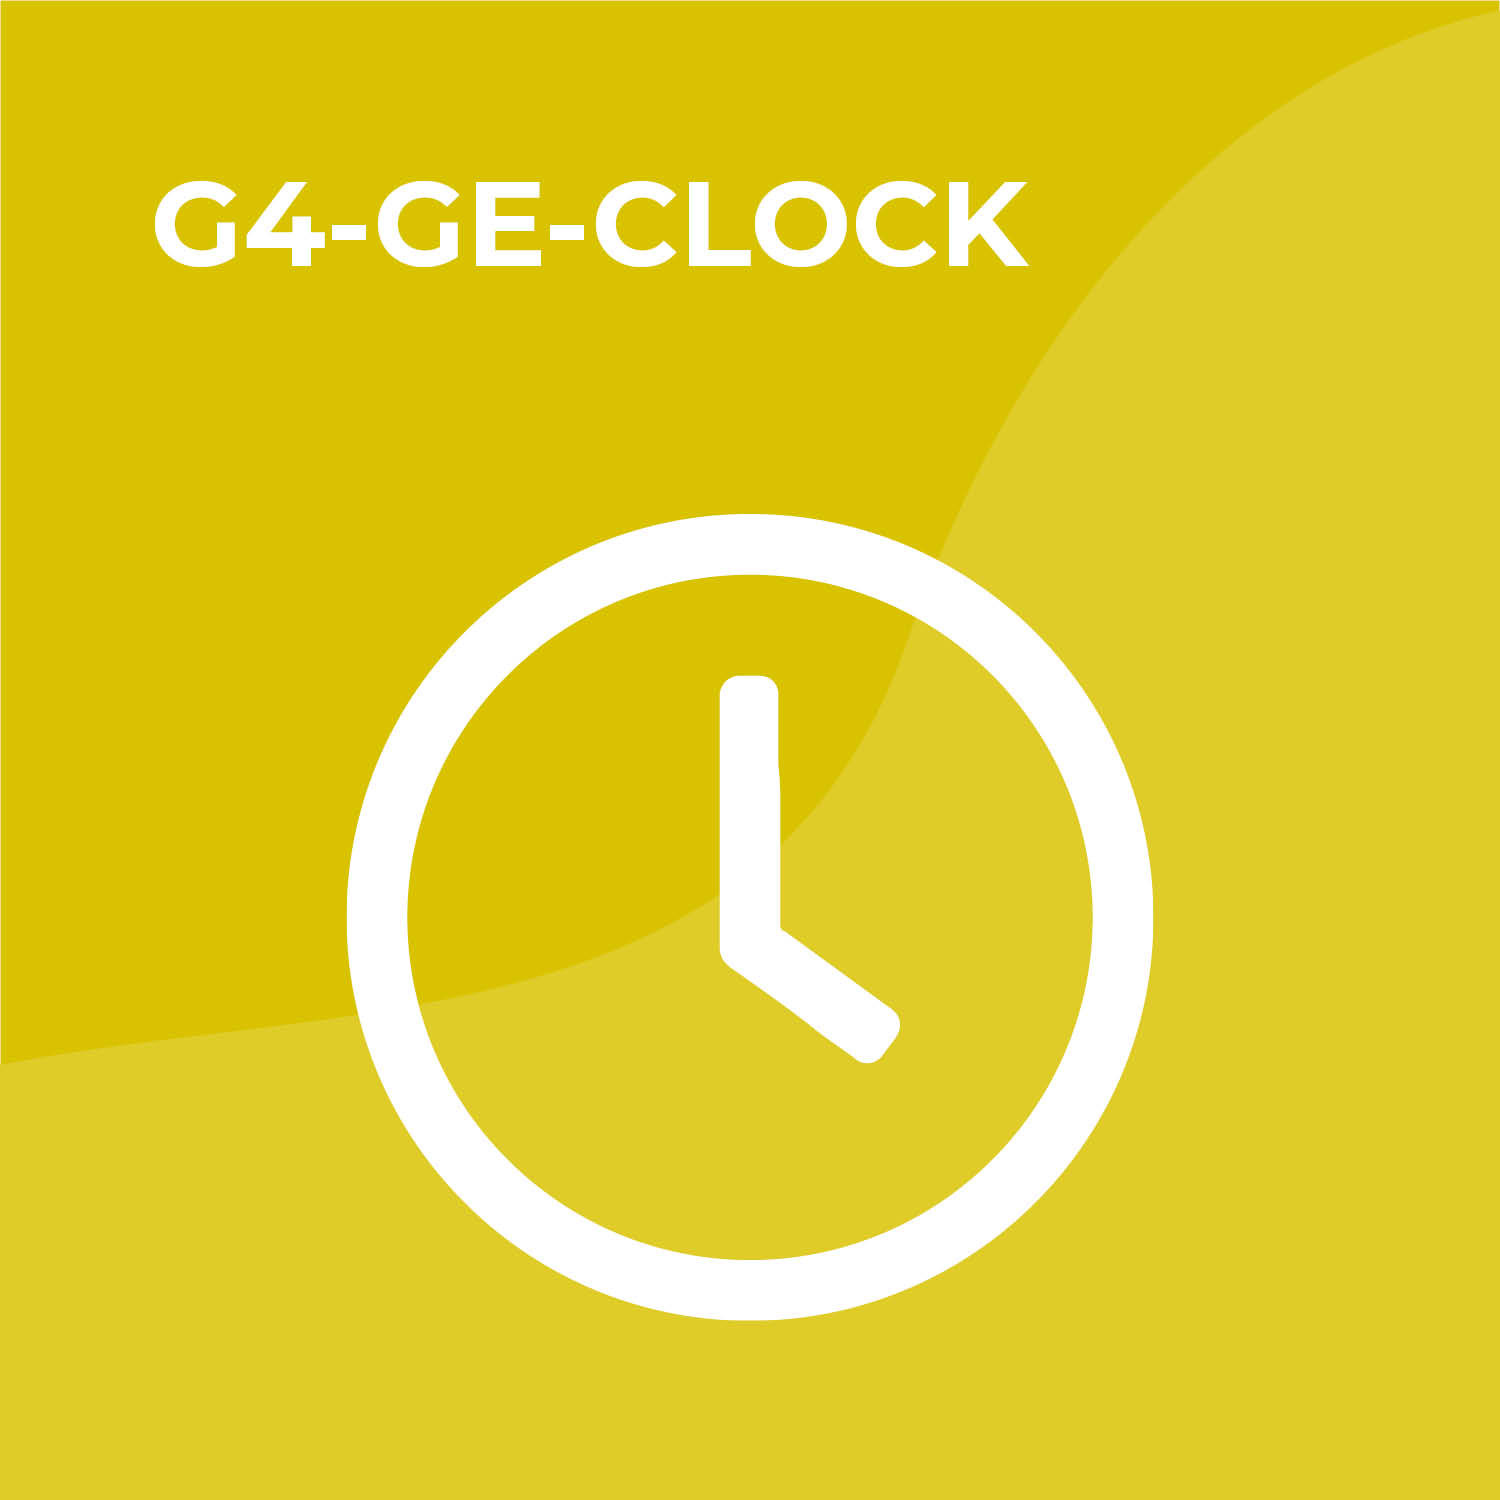 Ge-clock